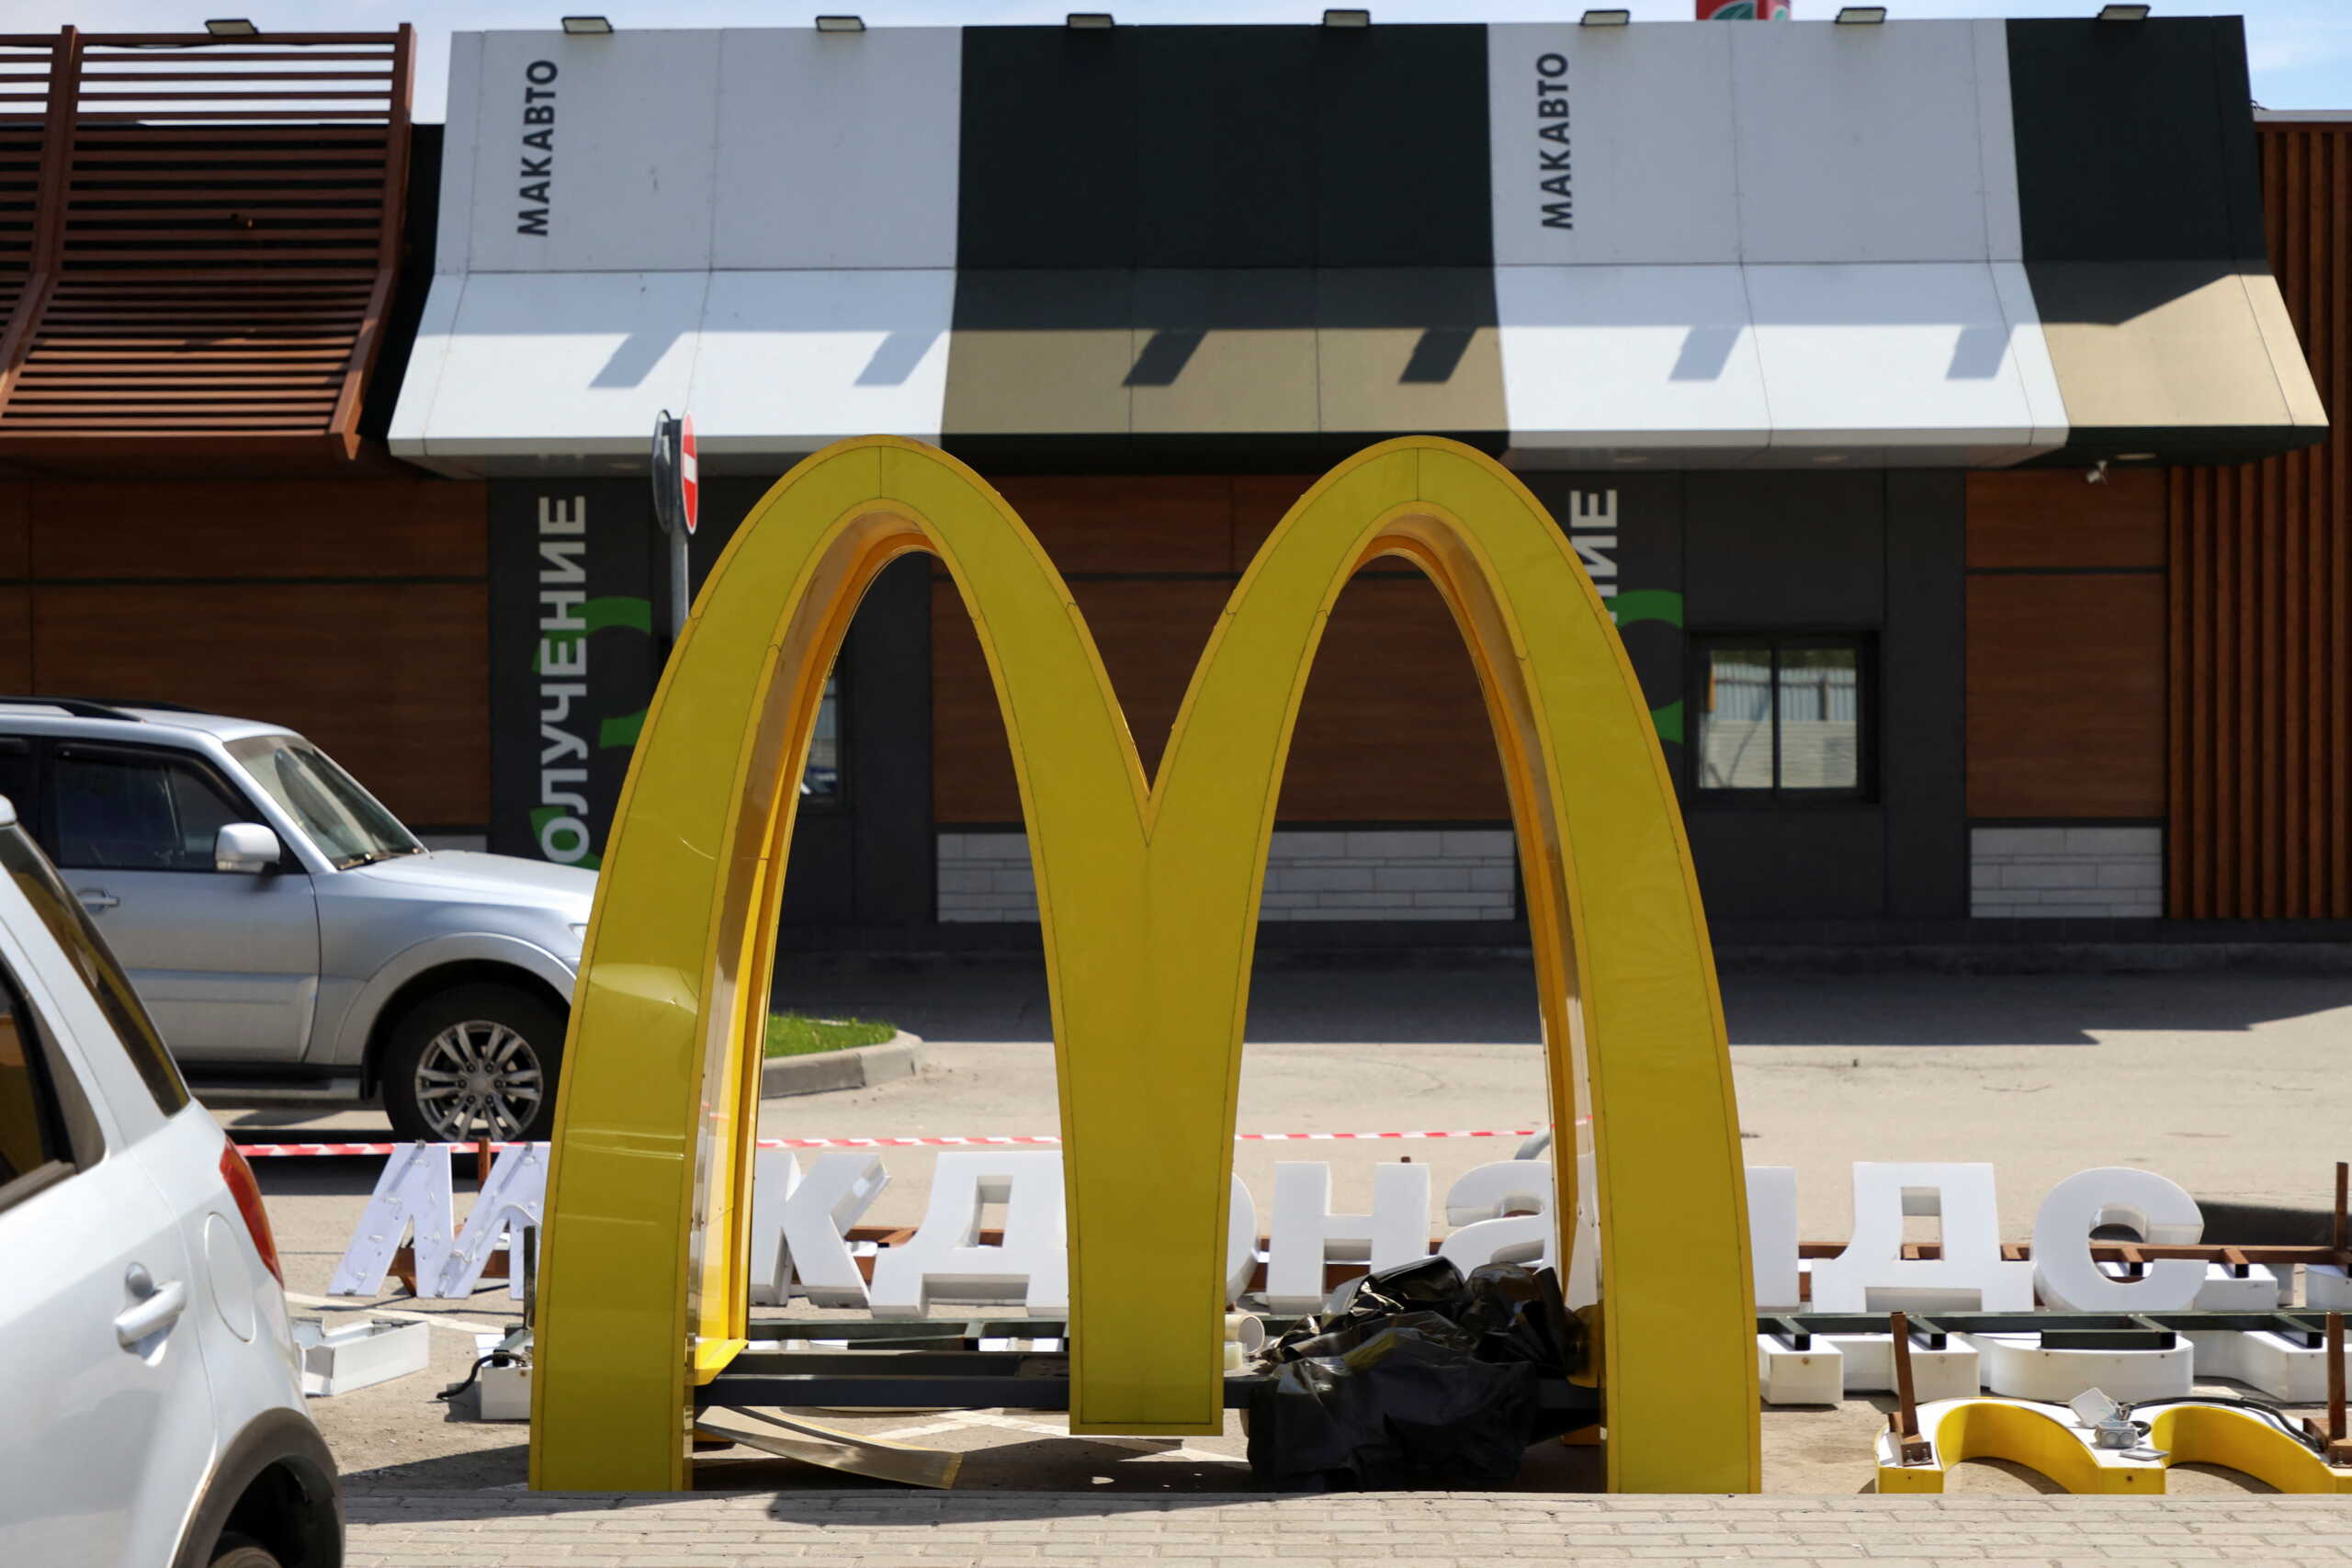 Ρωσία: Τα καταστήματα των McDonald’s στην Μόσχα ανοίγουν ξανά αλλά με νέα ονομασία